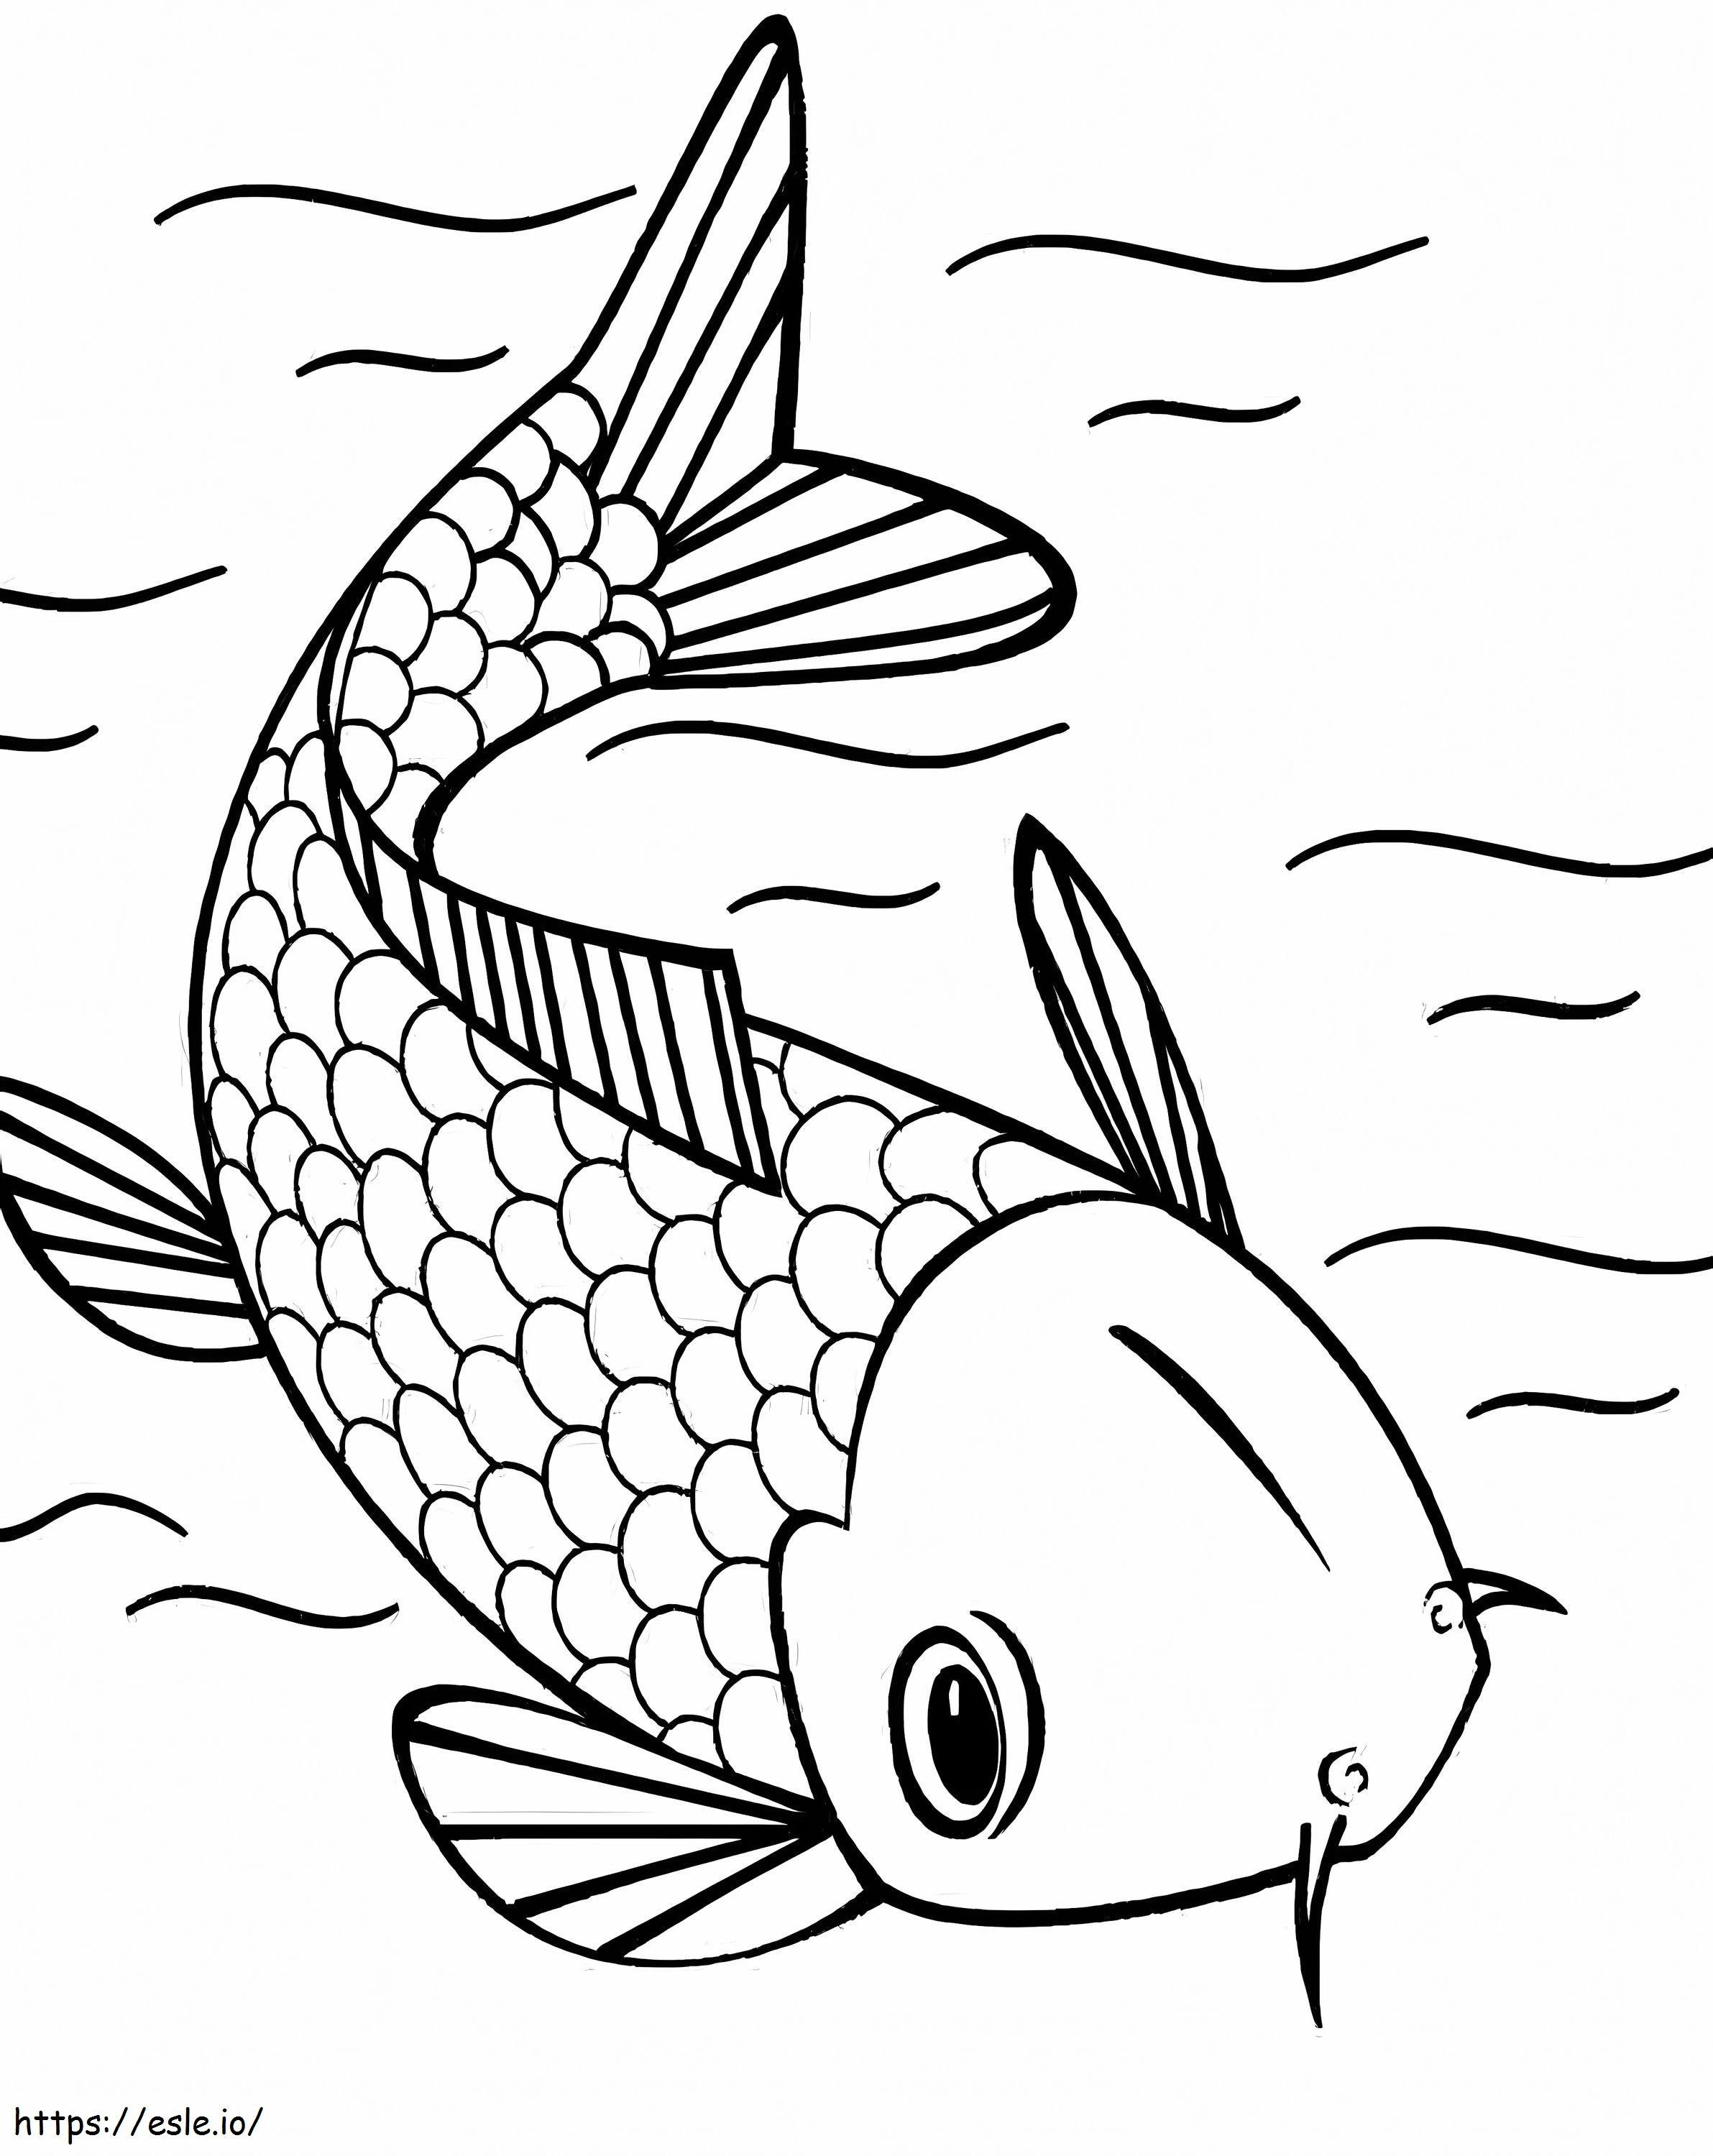 Natação de peixes Koi para colorir